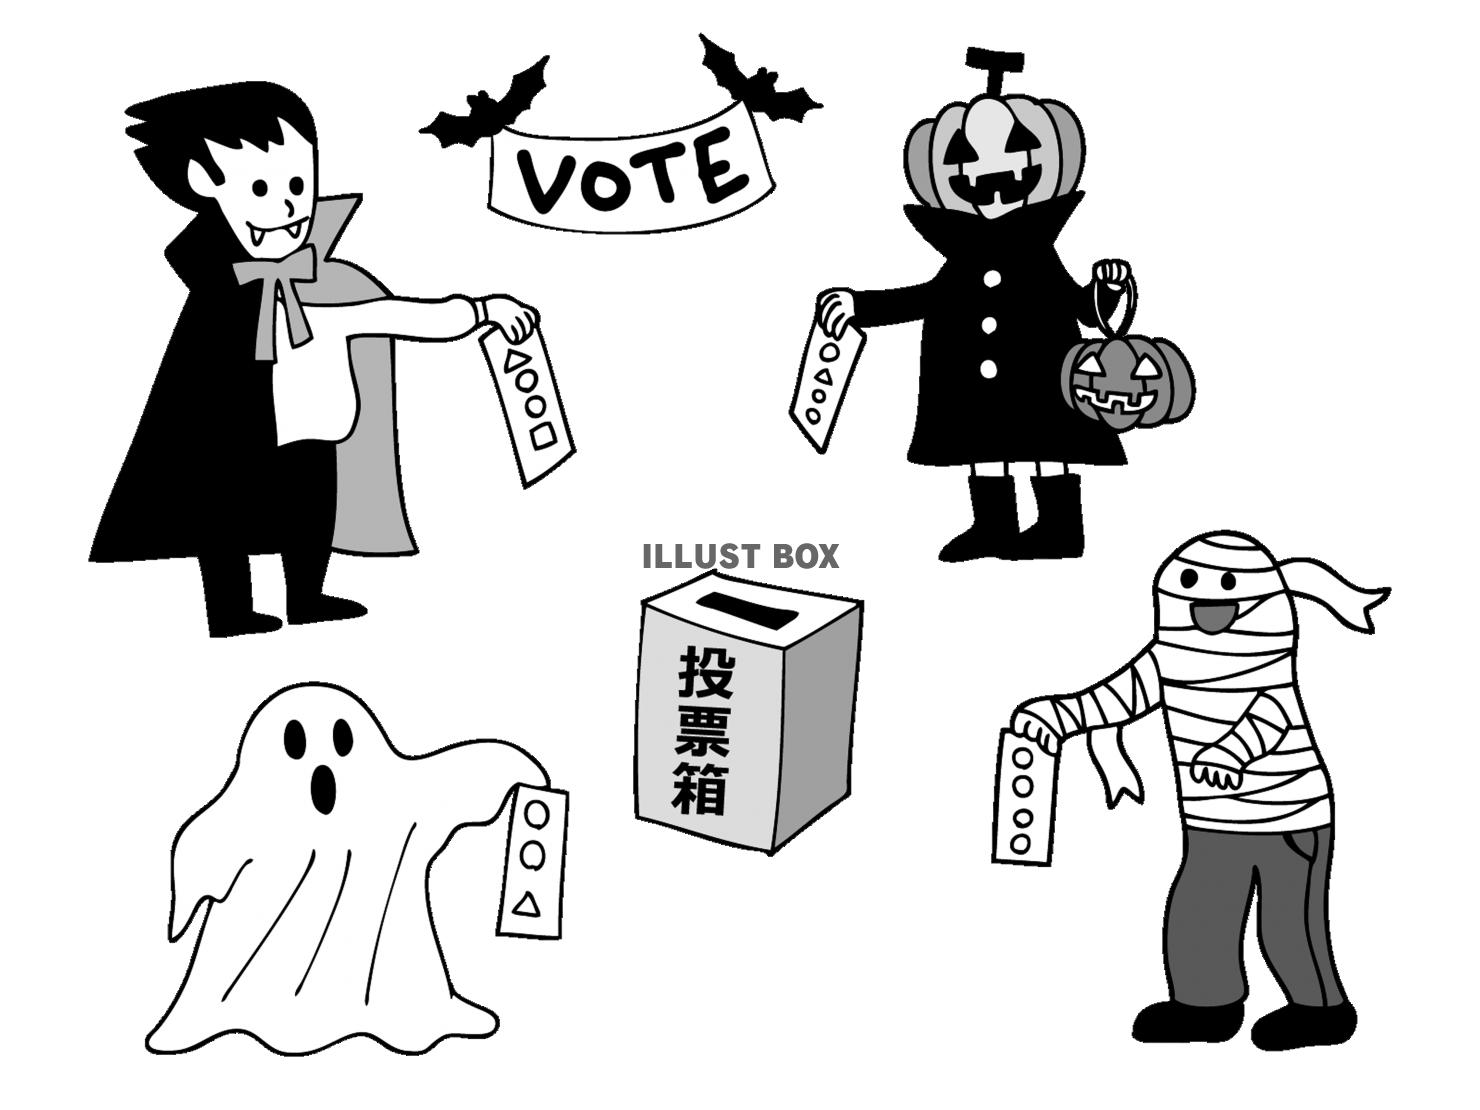 ハロウィンの仮装で投票に行くイラスト